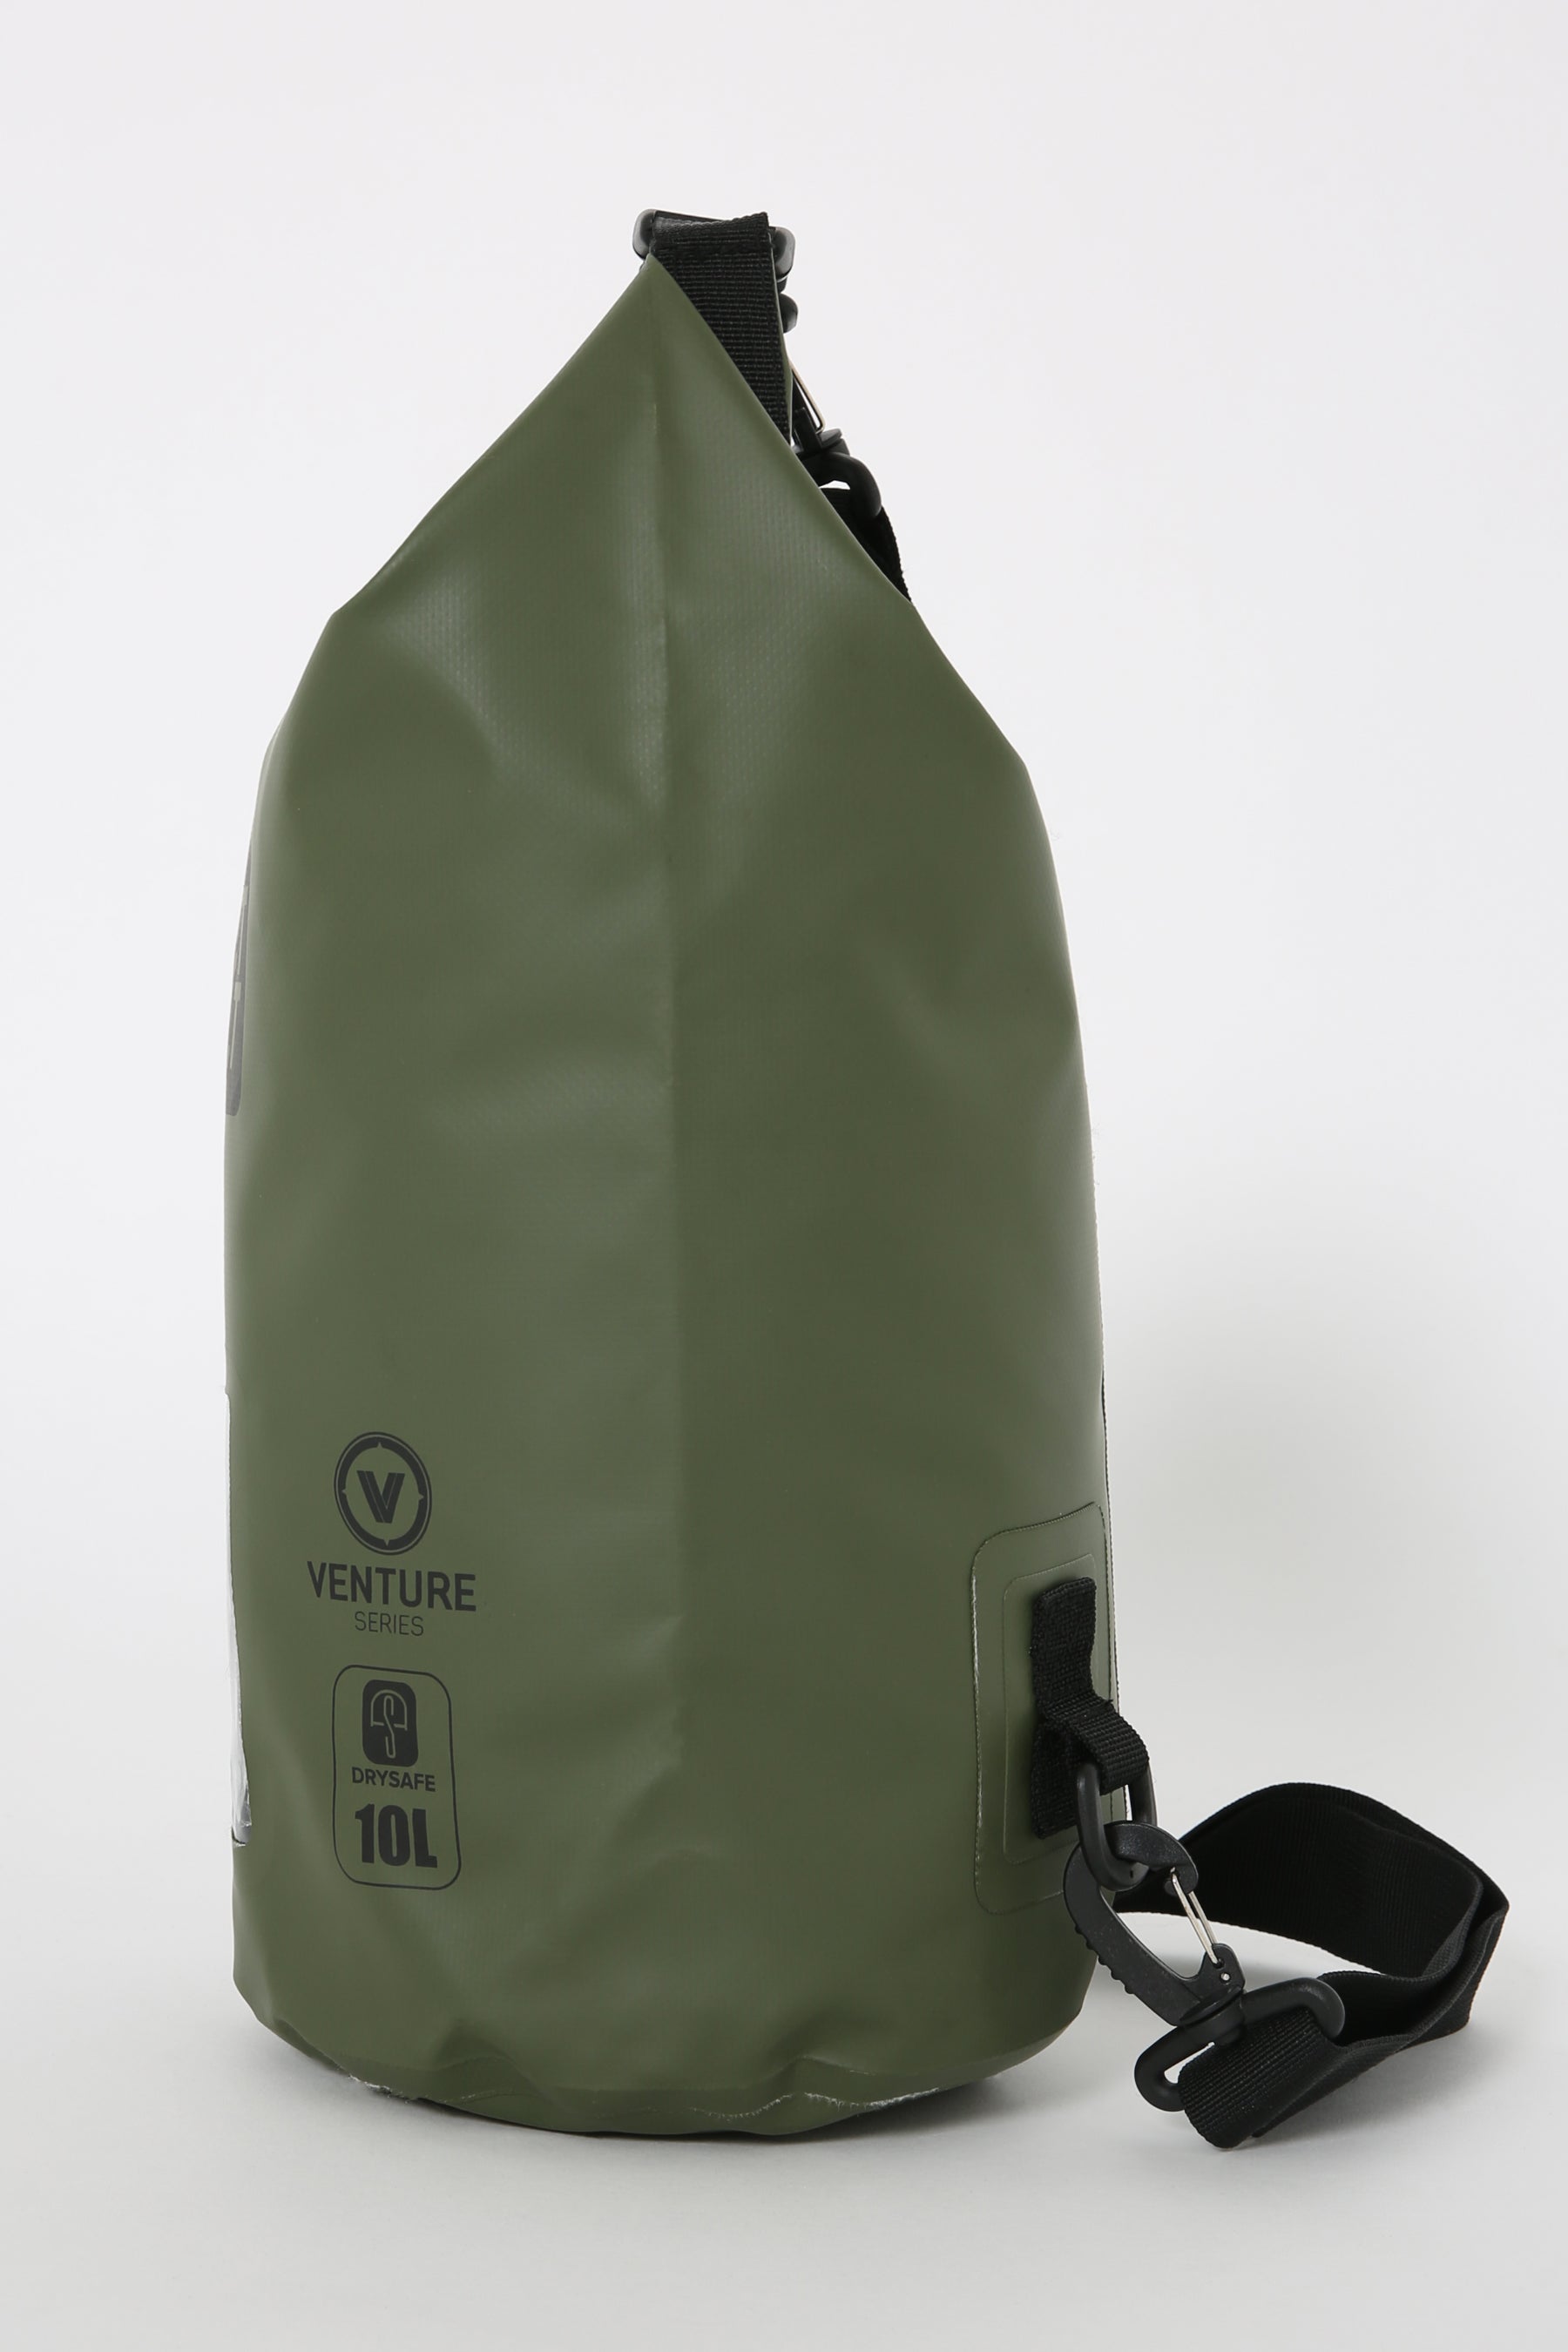 Jetpilot Venture 10l Drysafe Backpack - Sage Lifestyle 6